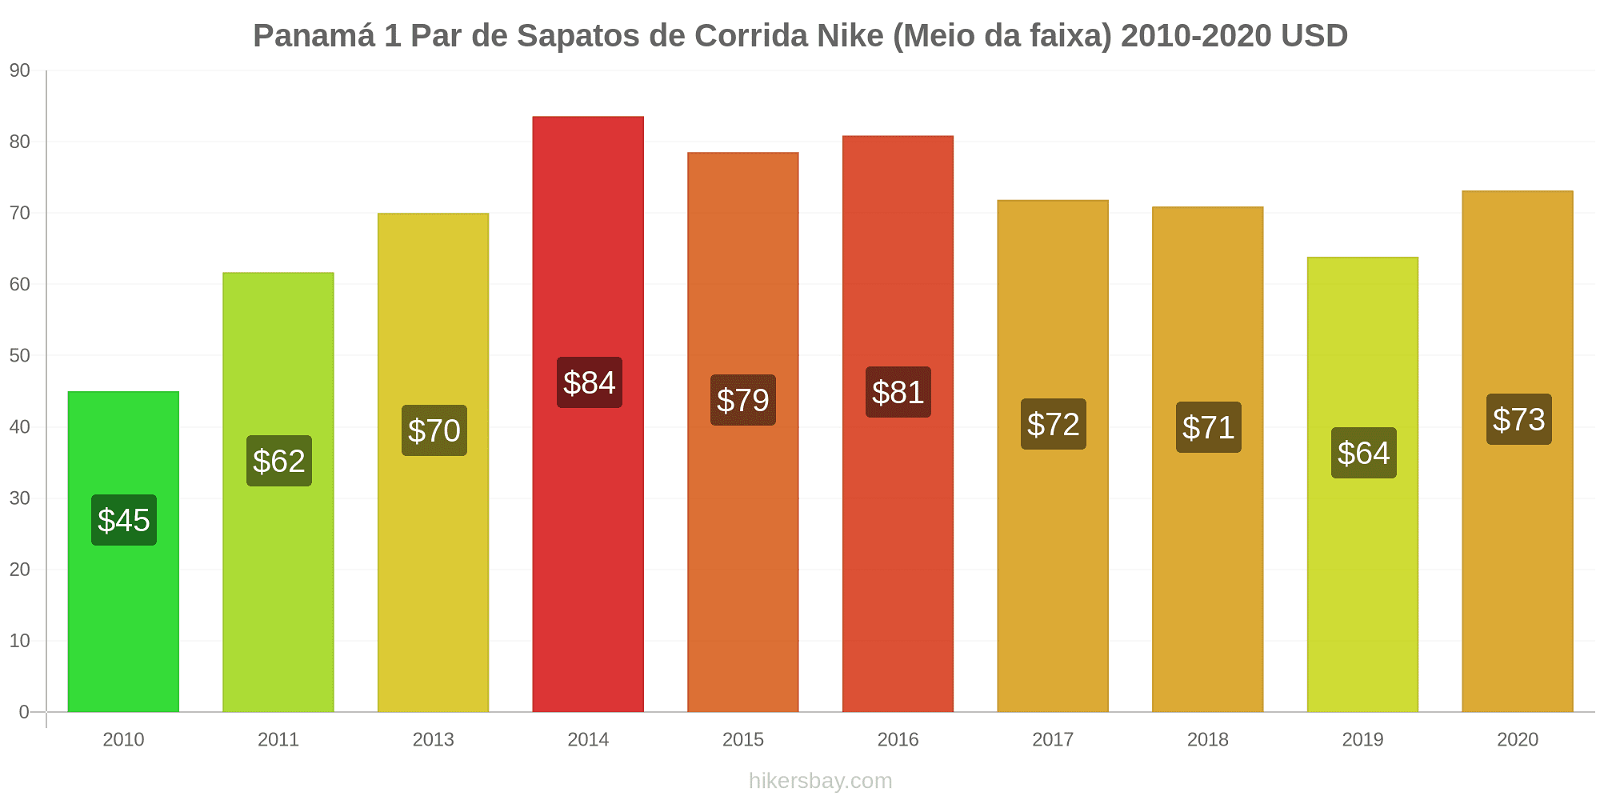 Panamá variação de preço 1 par de tênis Nike (mid-range) hikersbay.com